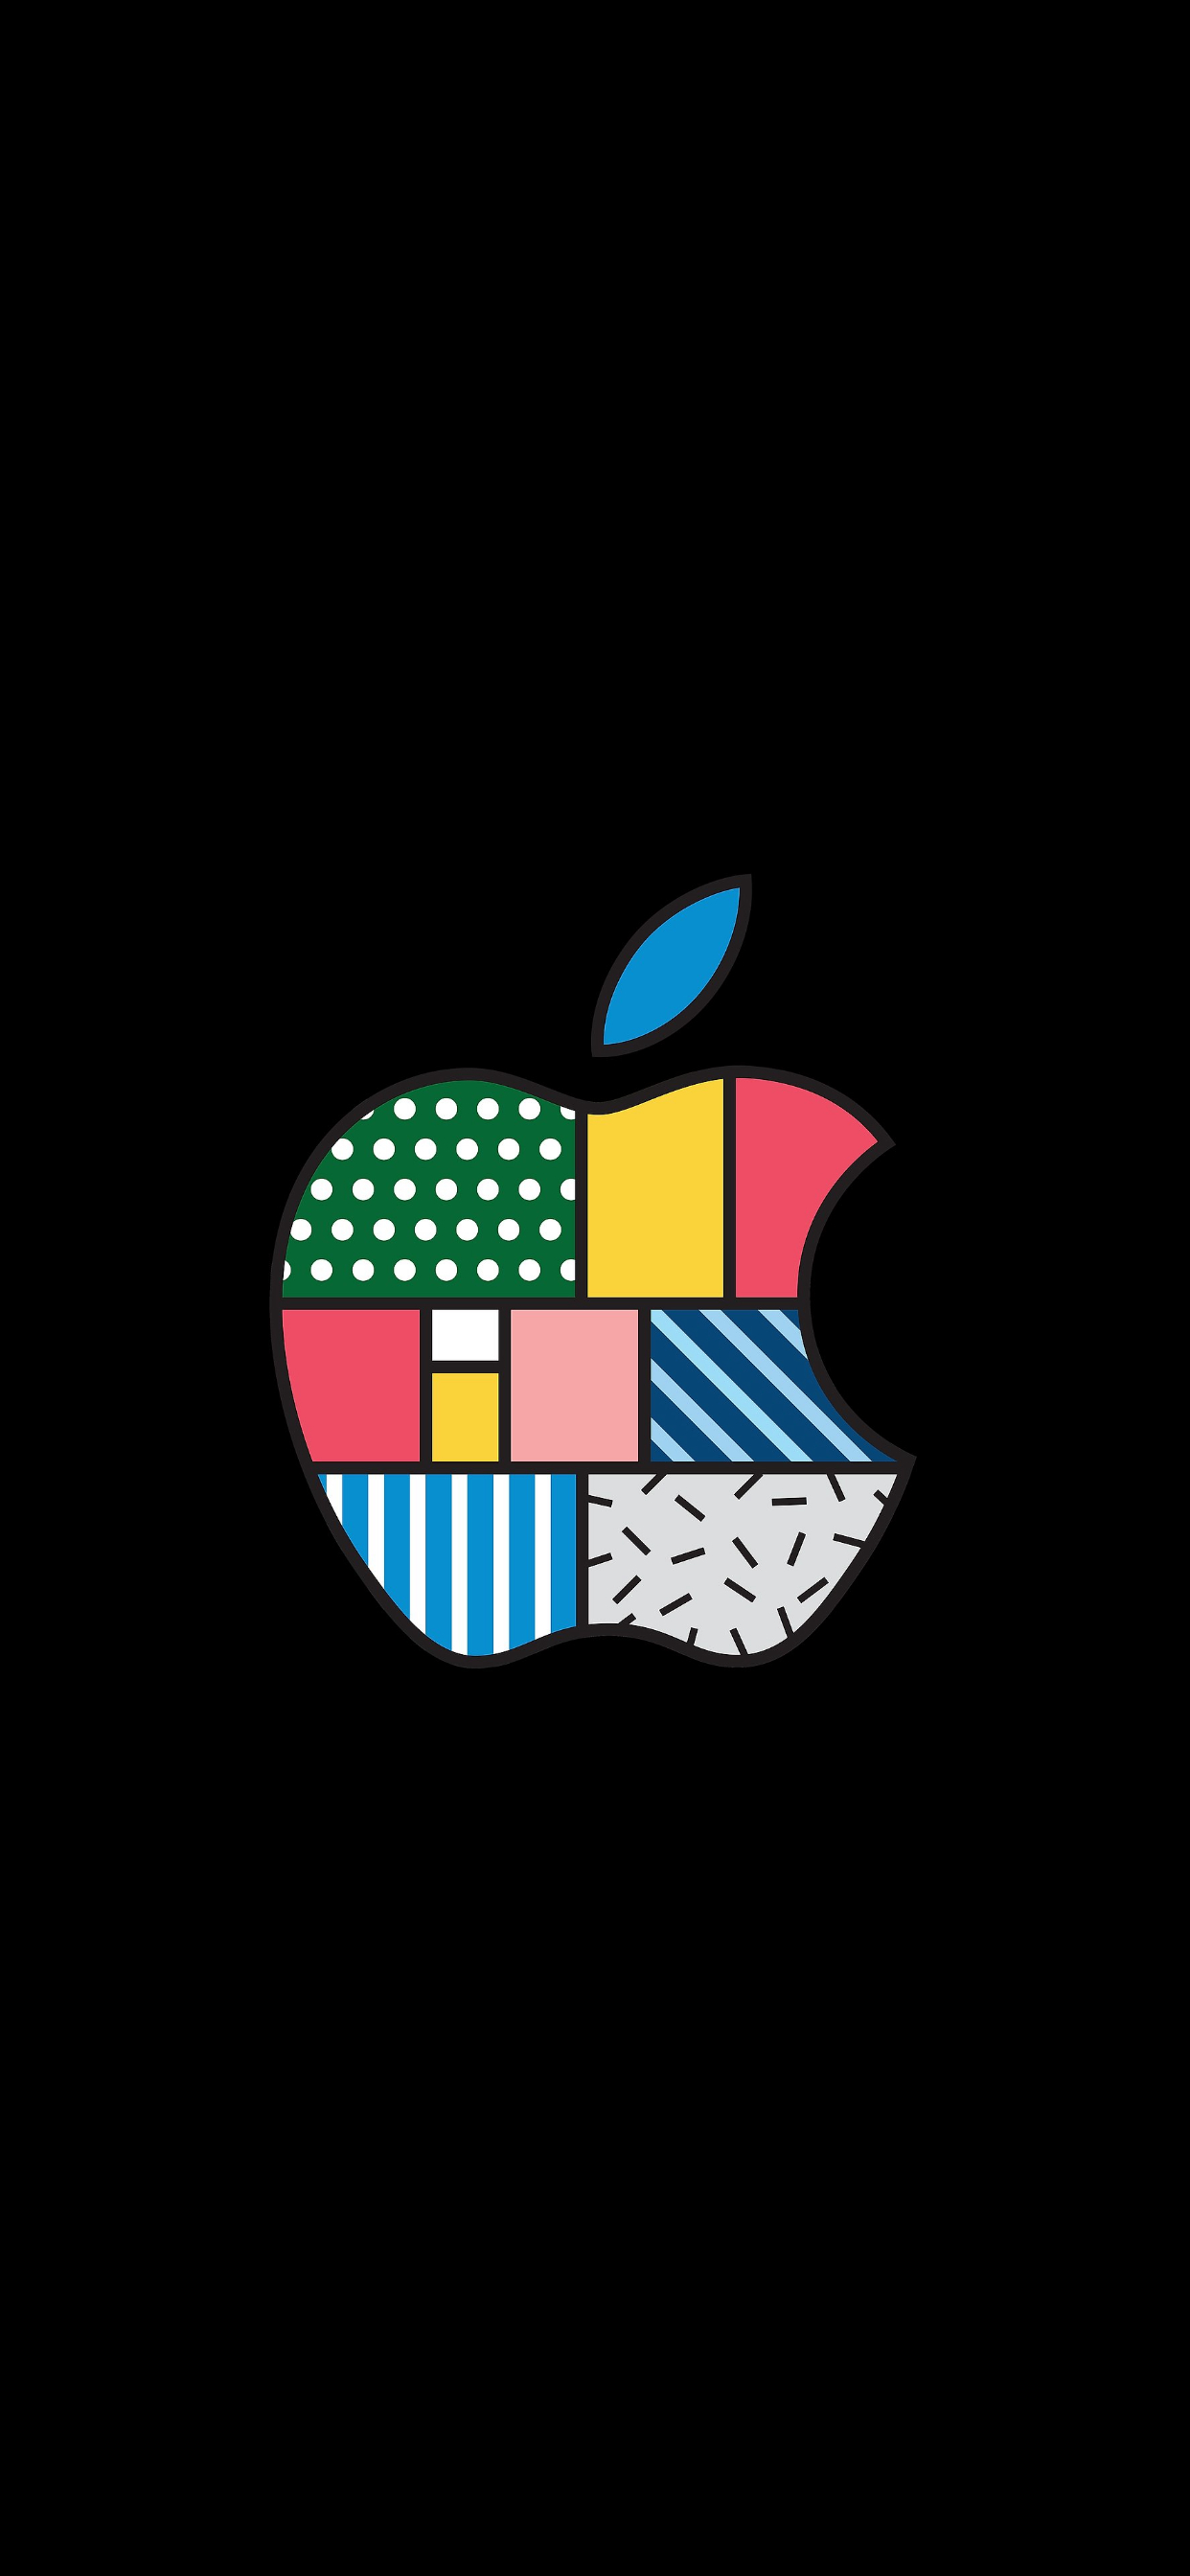 苹果壁纸 logo 1920图片